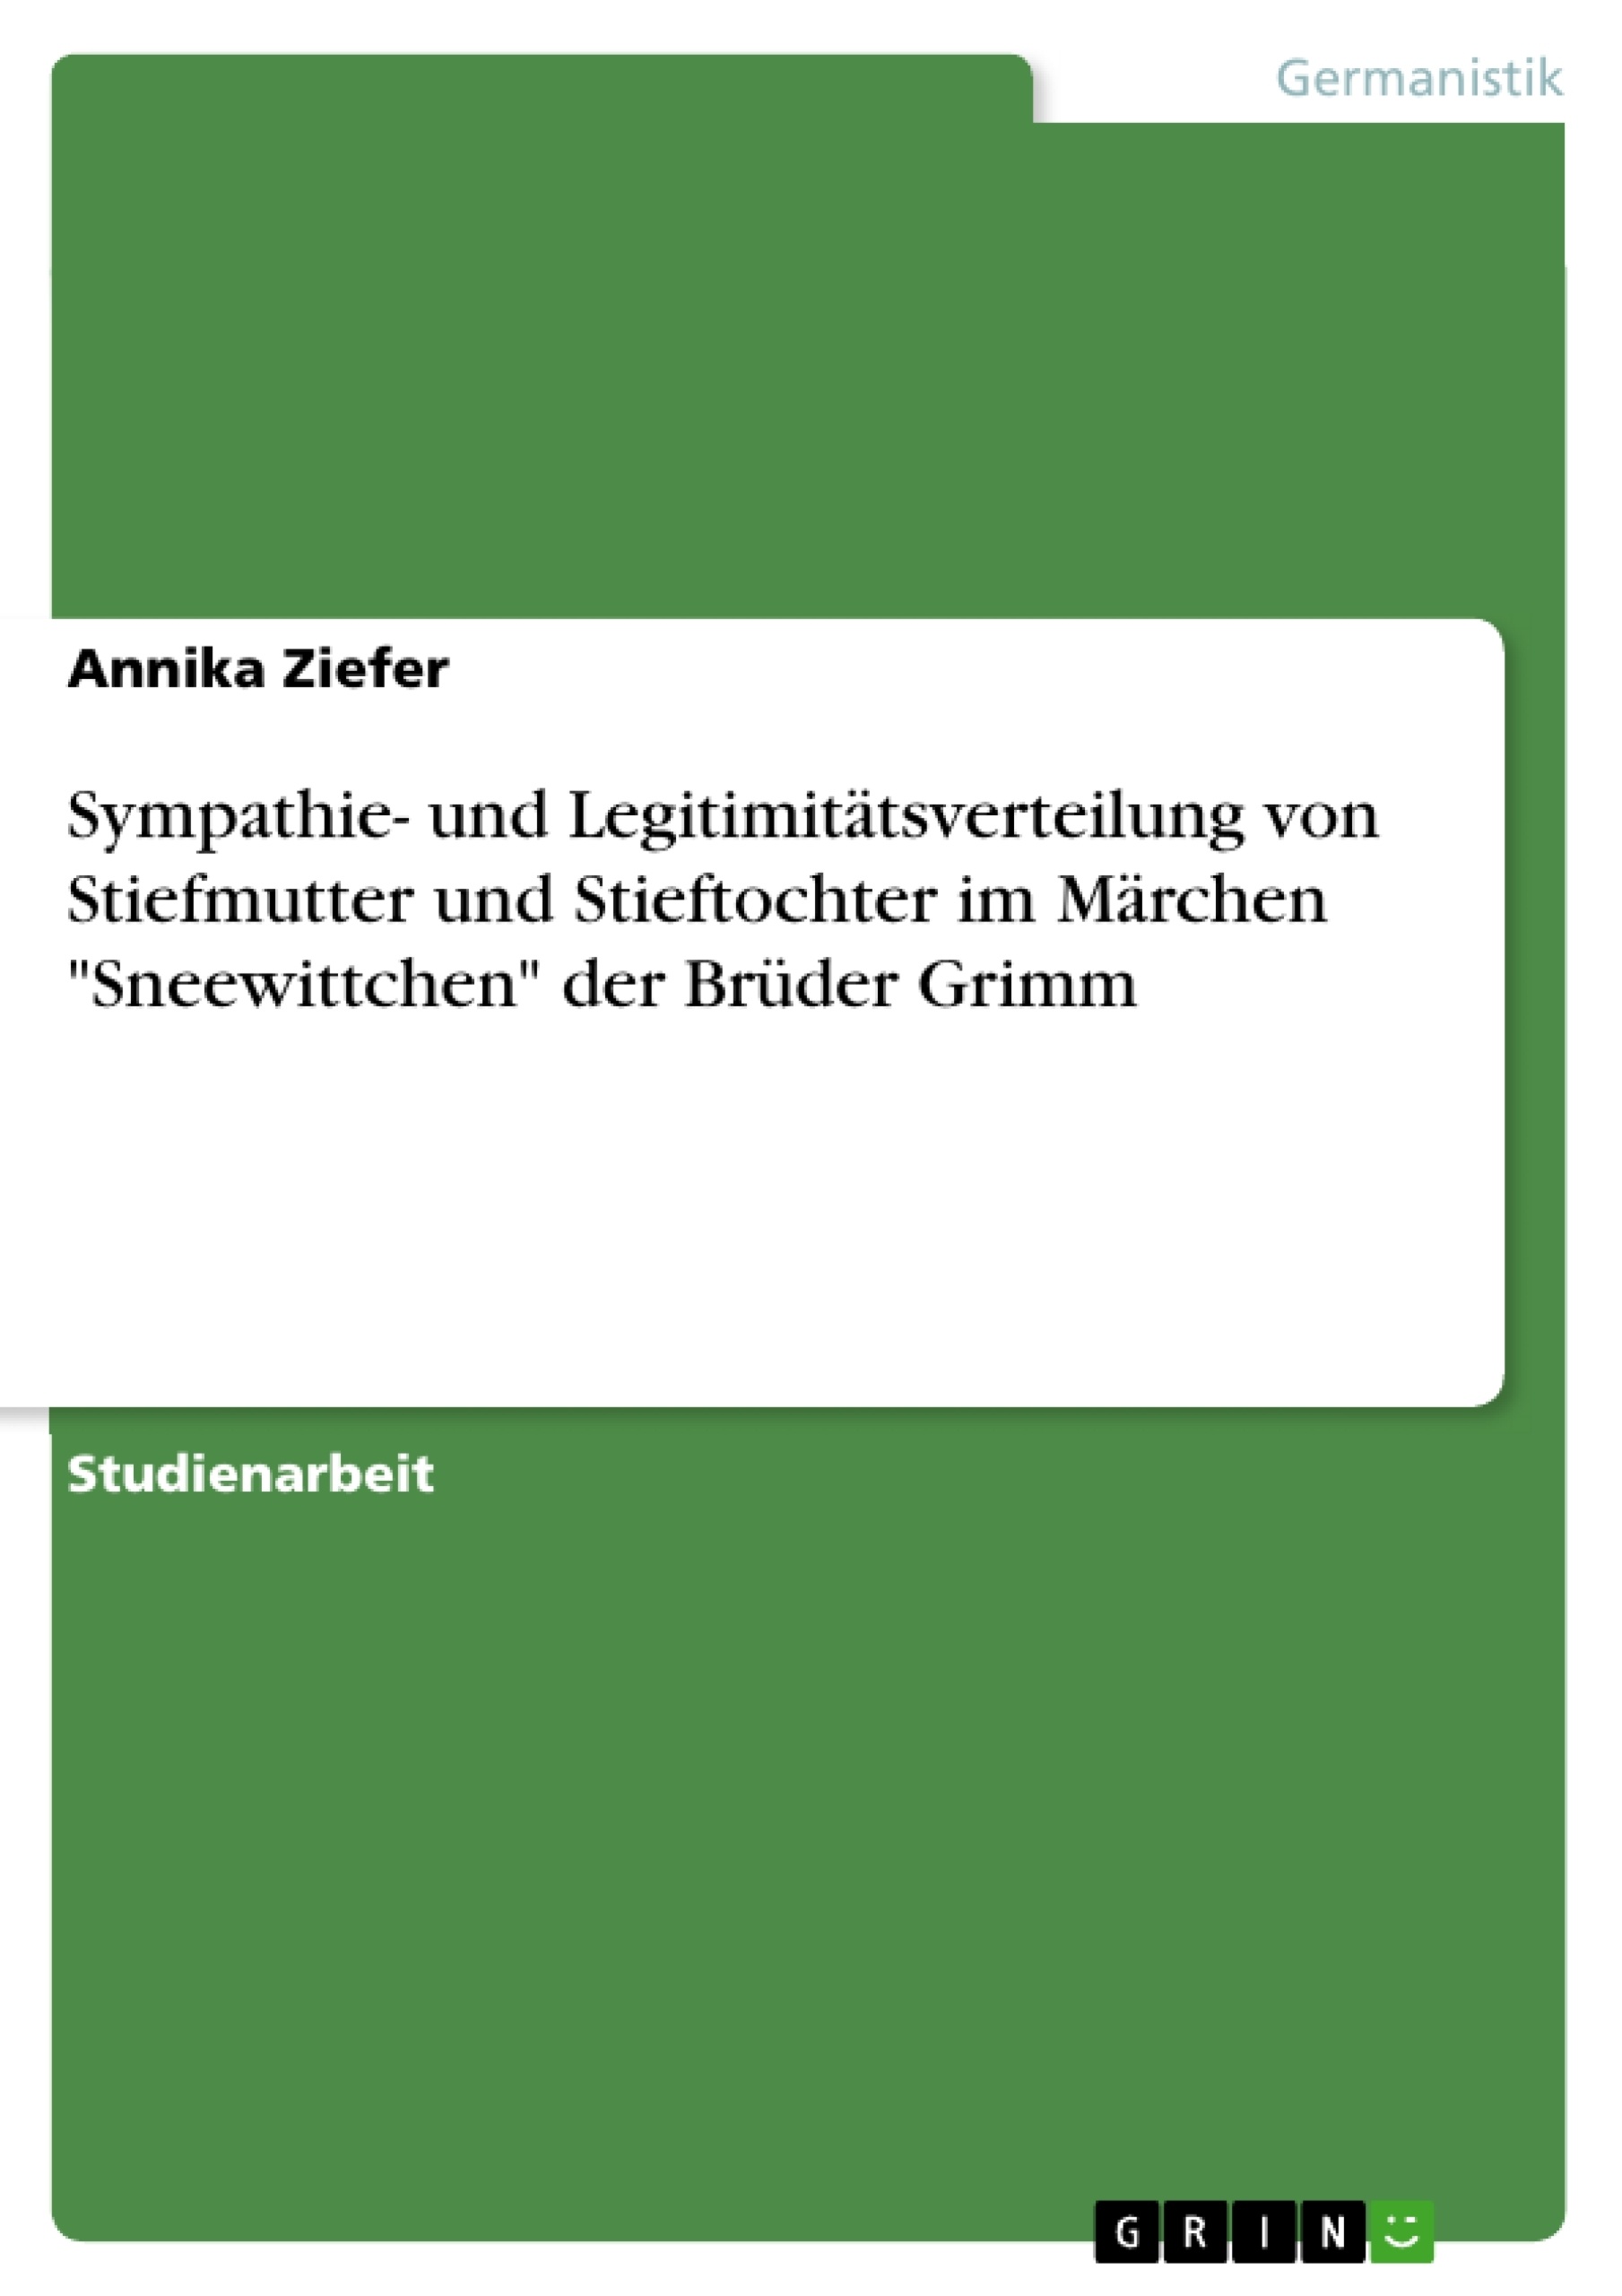 Title: Sympathie- und Legitimitätsverteilung von Stiefmutter und Stieftochter im Märchen "Sneewittchen" der Brüder Grimm